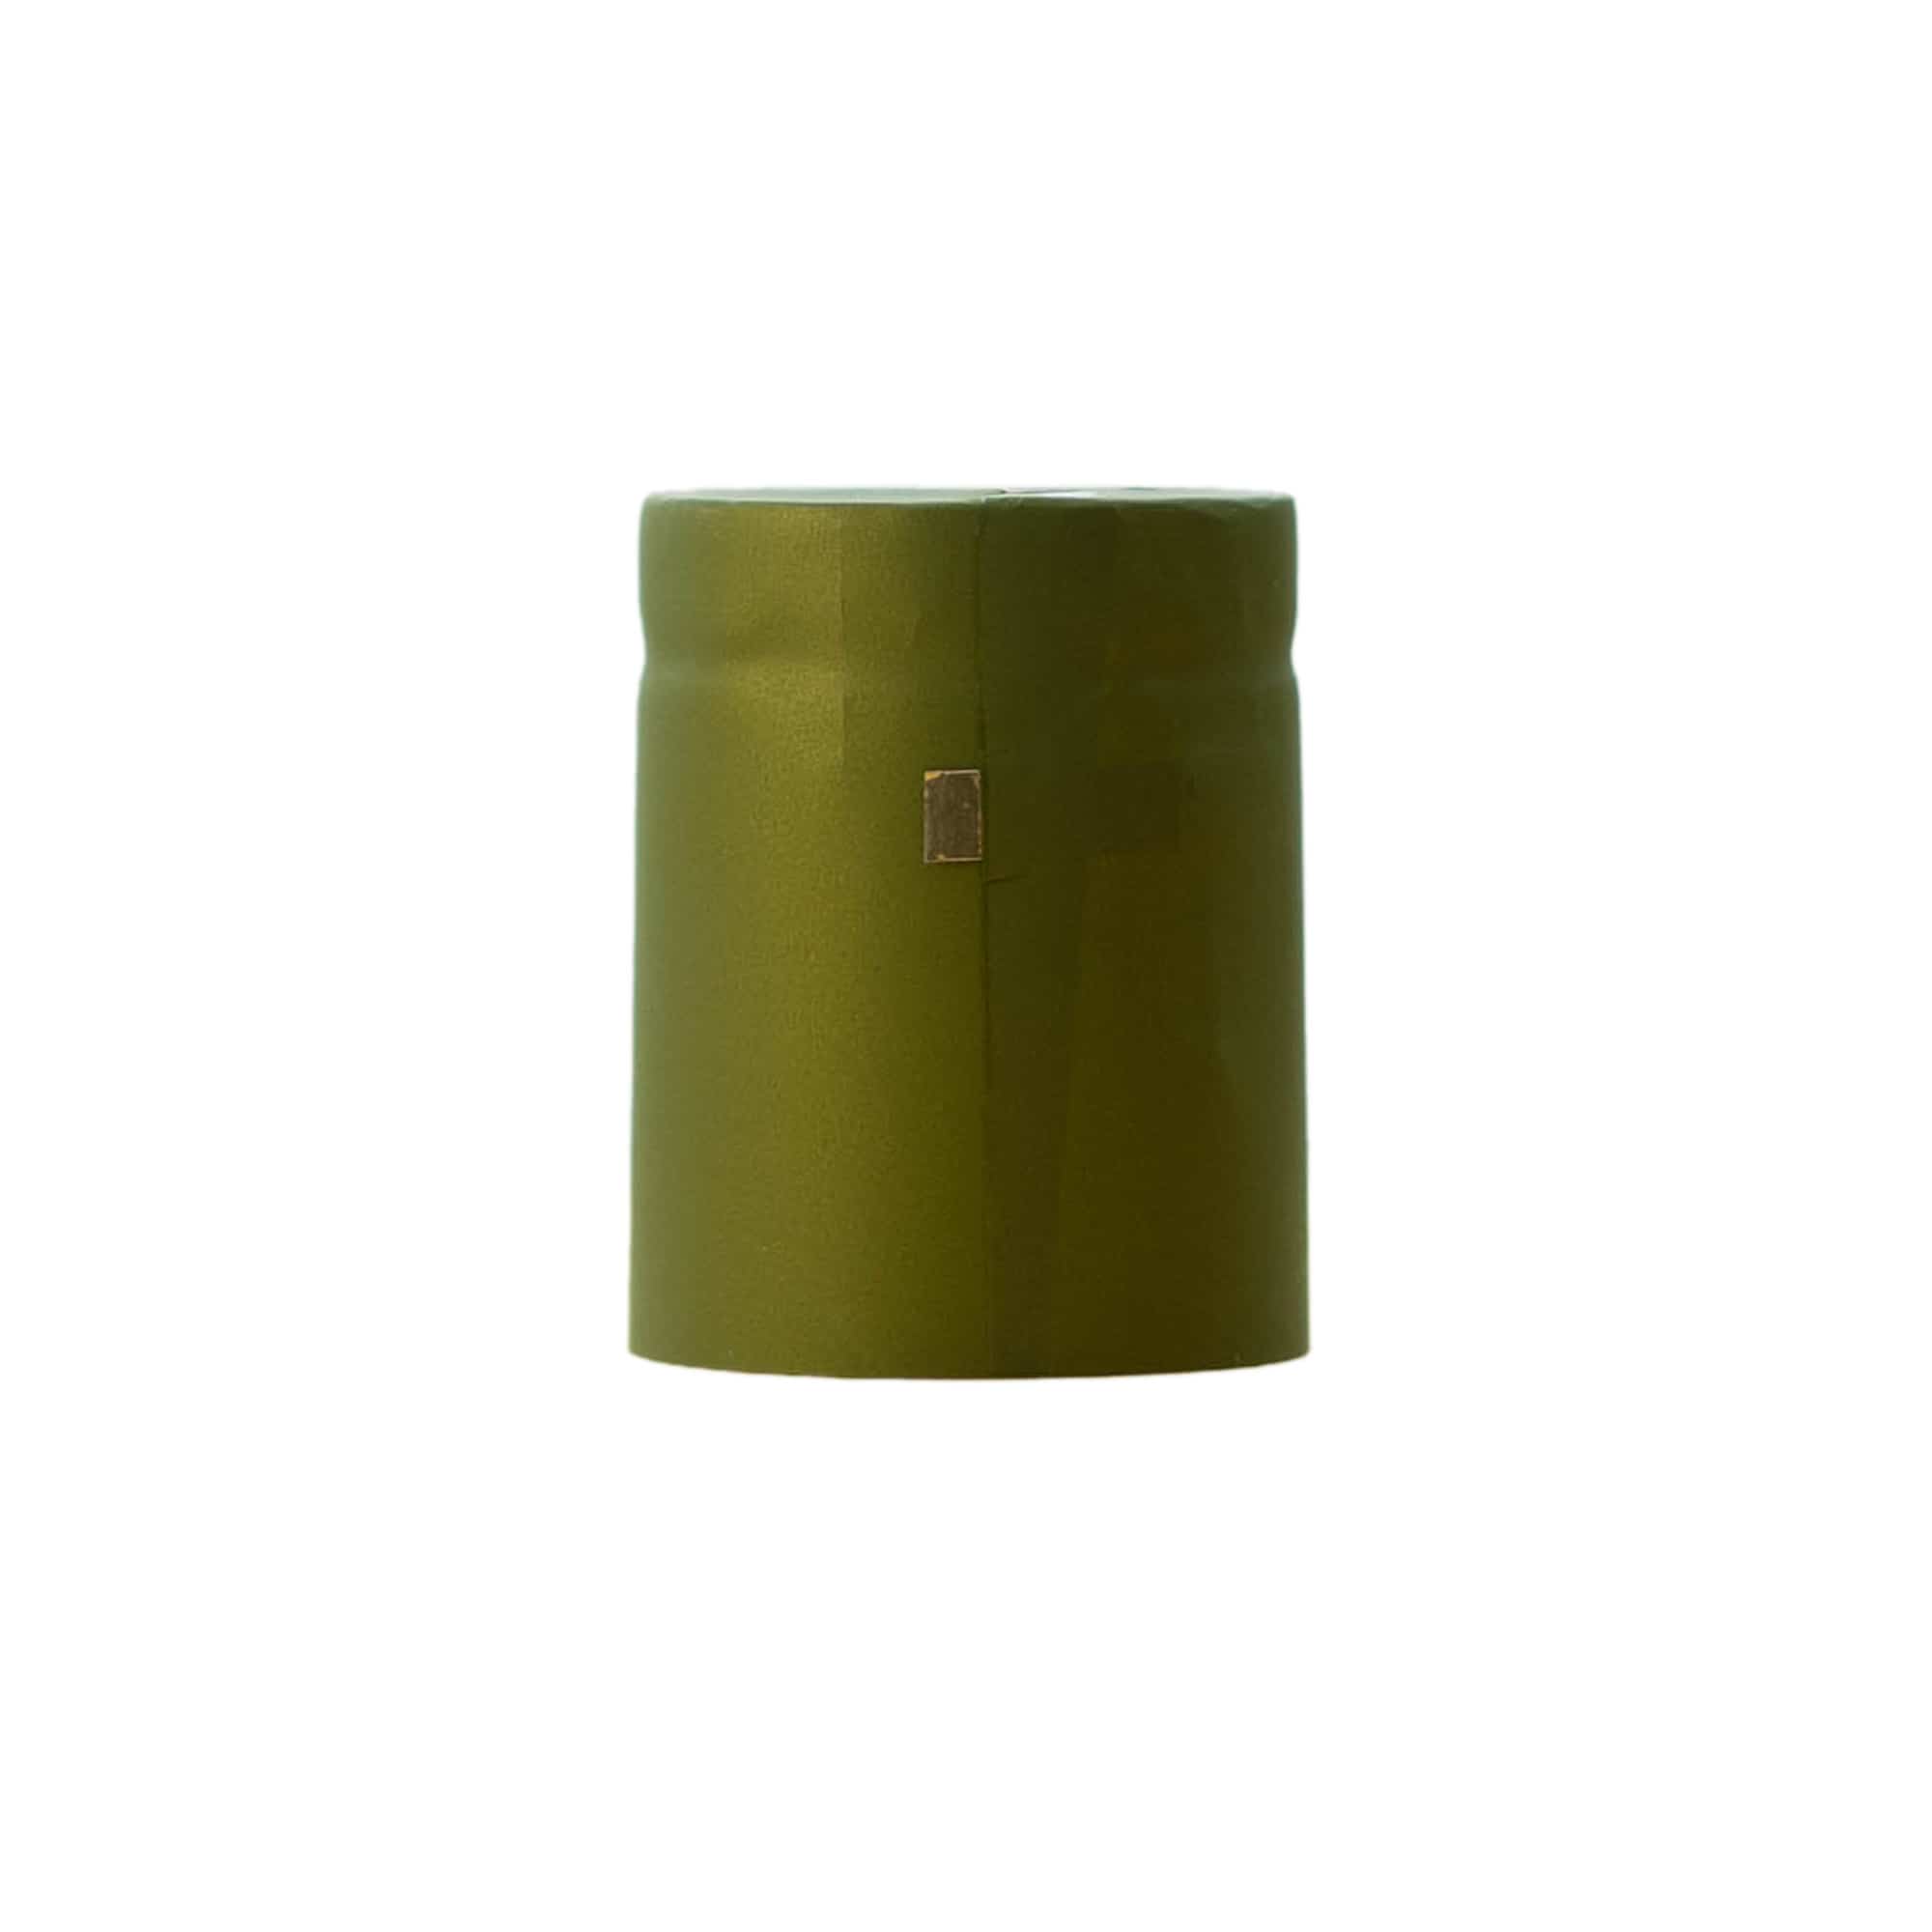 Kapturek termokurczliwy 32x41, tworzywo sztuczne PVC, kolor oliwkowo-zielony